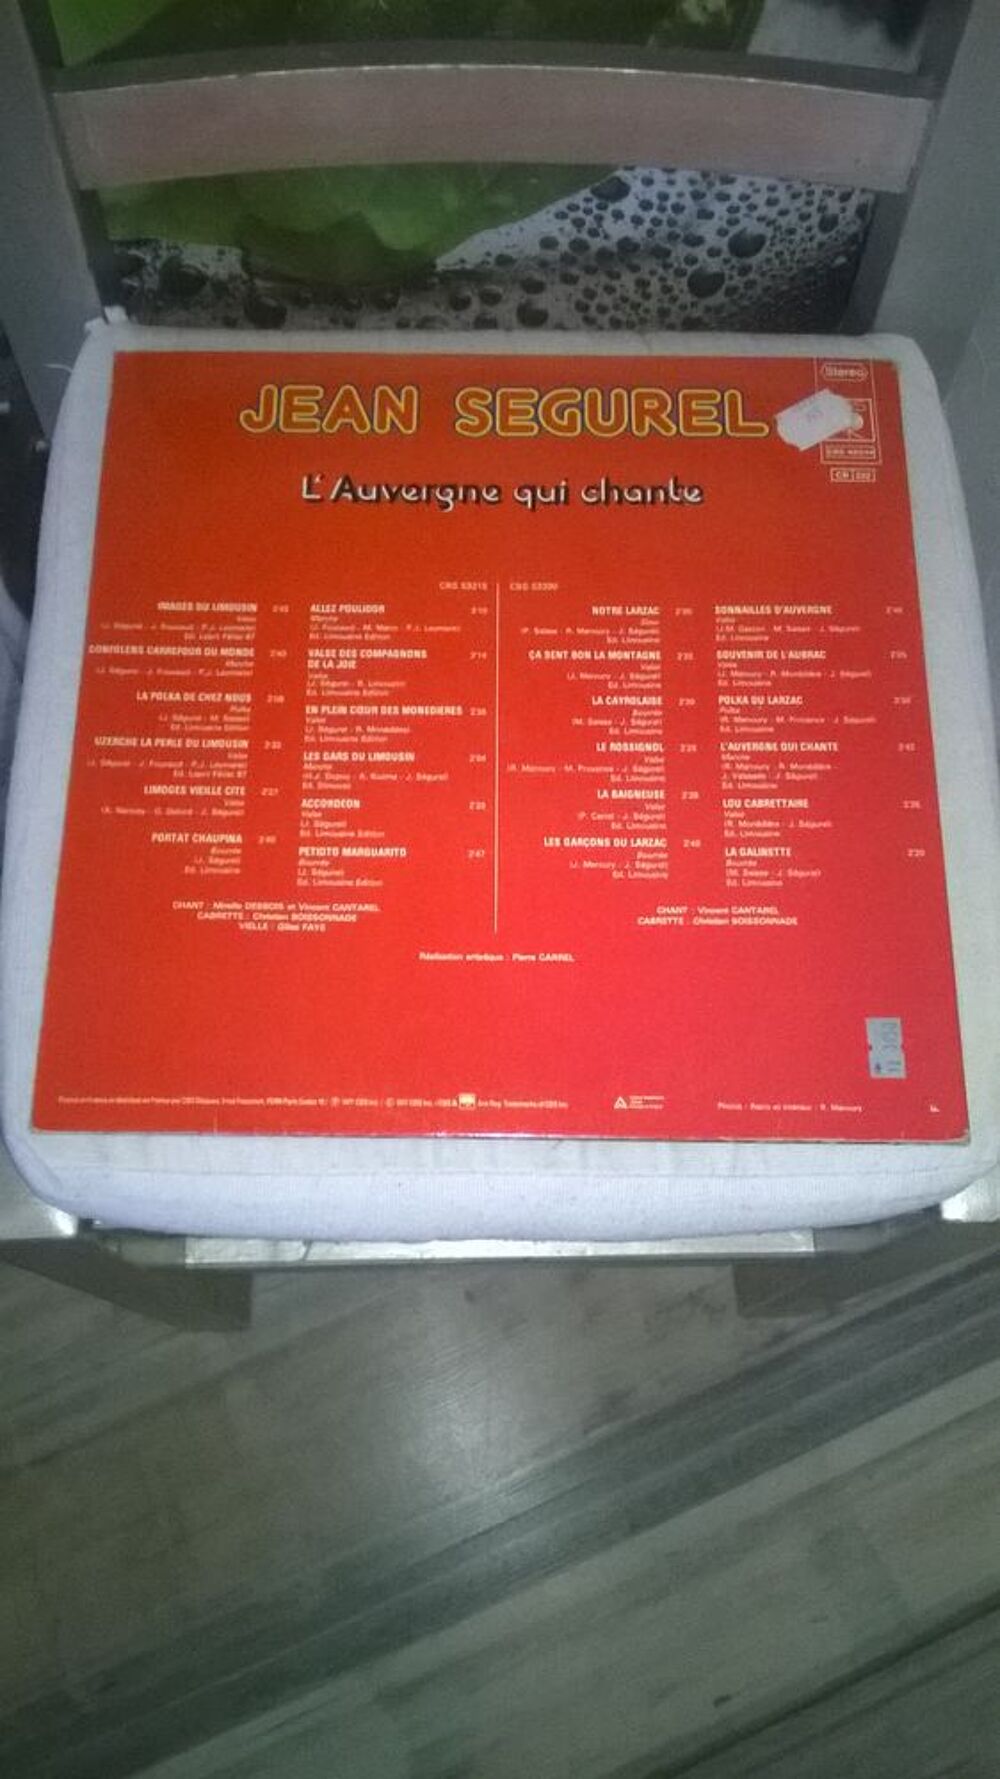 Vinyle Jean Segurel
L'Auvergne qui chante
1977
Excellent CD et vinyles